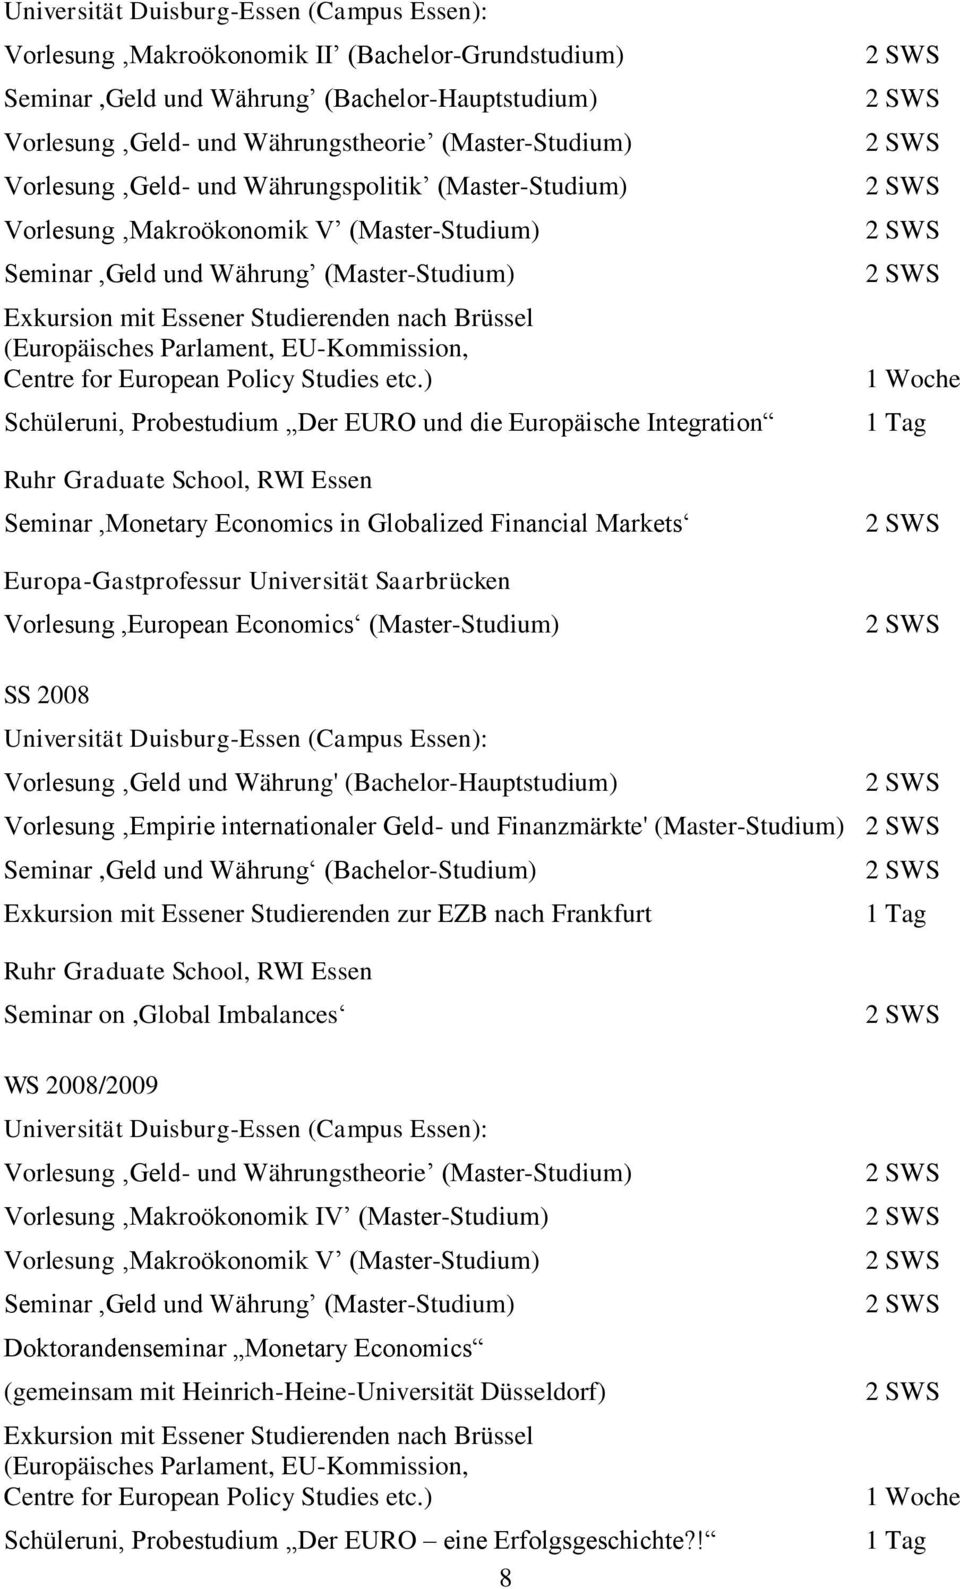 ) Schüleruni, Probestudium Der EURO und die Europäische Integration Ruhr Graduate School, RWI Essen Seminar,Monetary Economics in Globalized Financial Markets 1 Tag SS 2008 Vorlesung Empirie